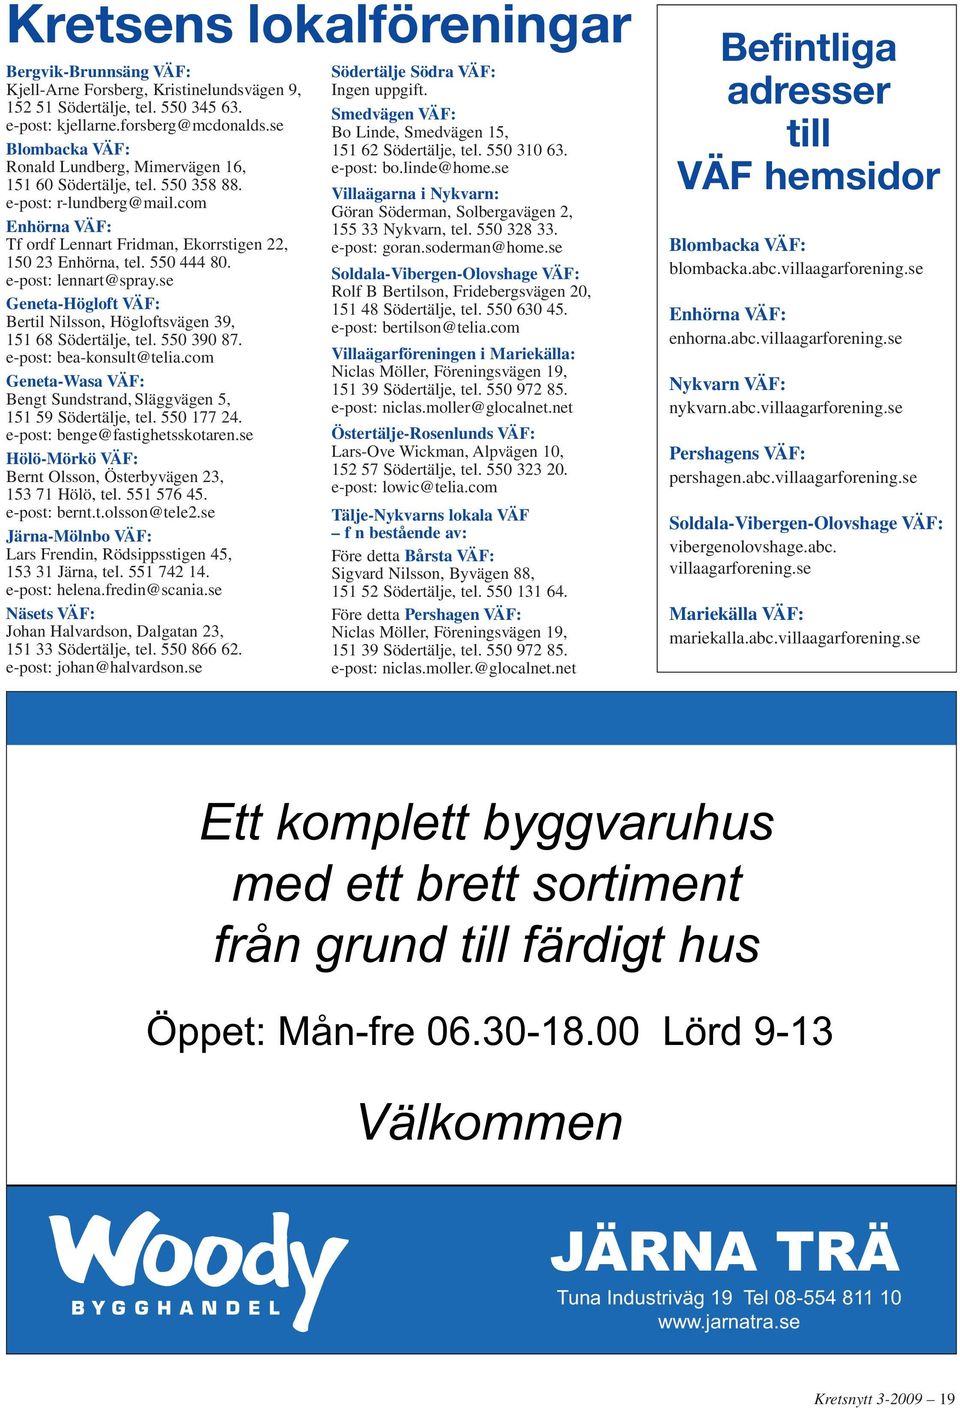 e-post: lennart@spray.se Geneta-Högloft VÄF: Bertil Nilsson, Högloftsvägen 39, 151 68 Södertälje, tel. 550 390 87. e-post: bea-konsult@telia.